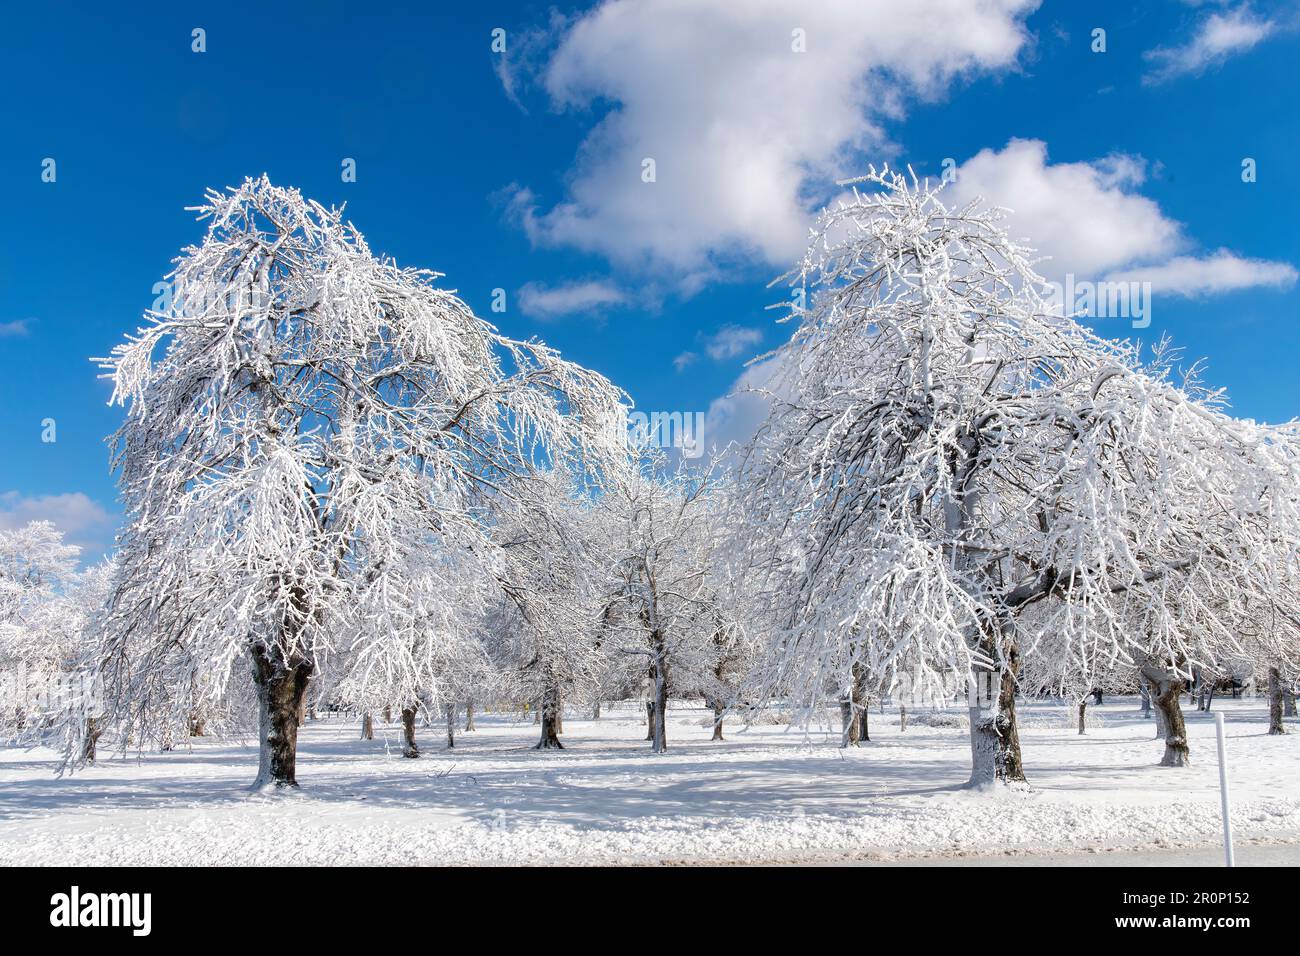 Im Prospect Point, Niagara Falls State Park, NY, USA, erwarten euch frostige weiße Bäume und Schnee Stockfoto